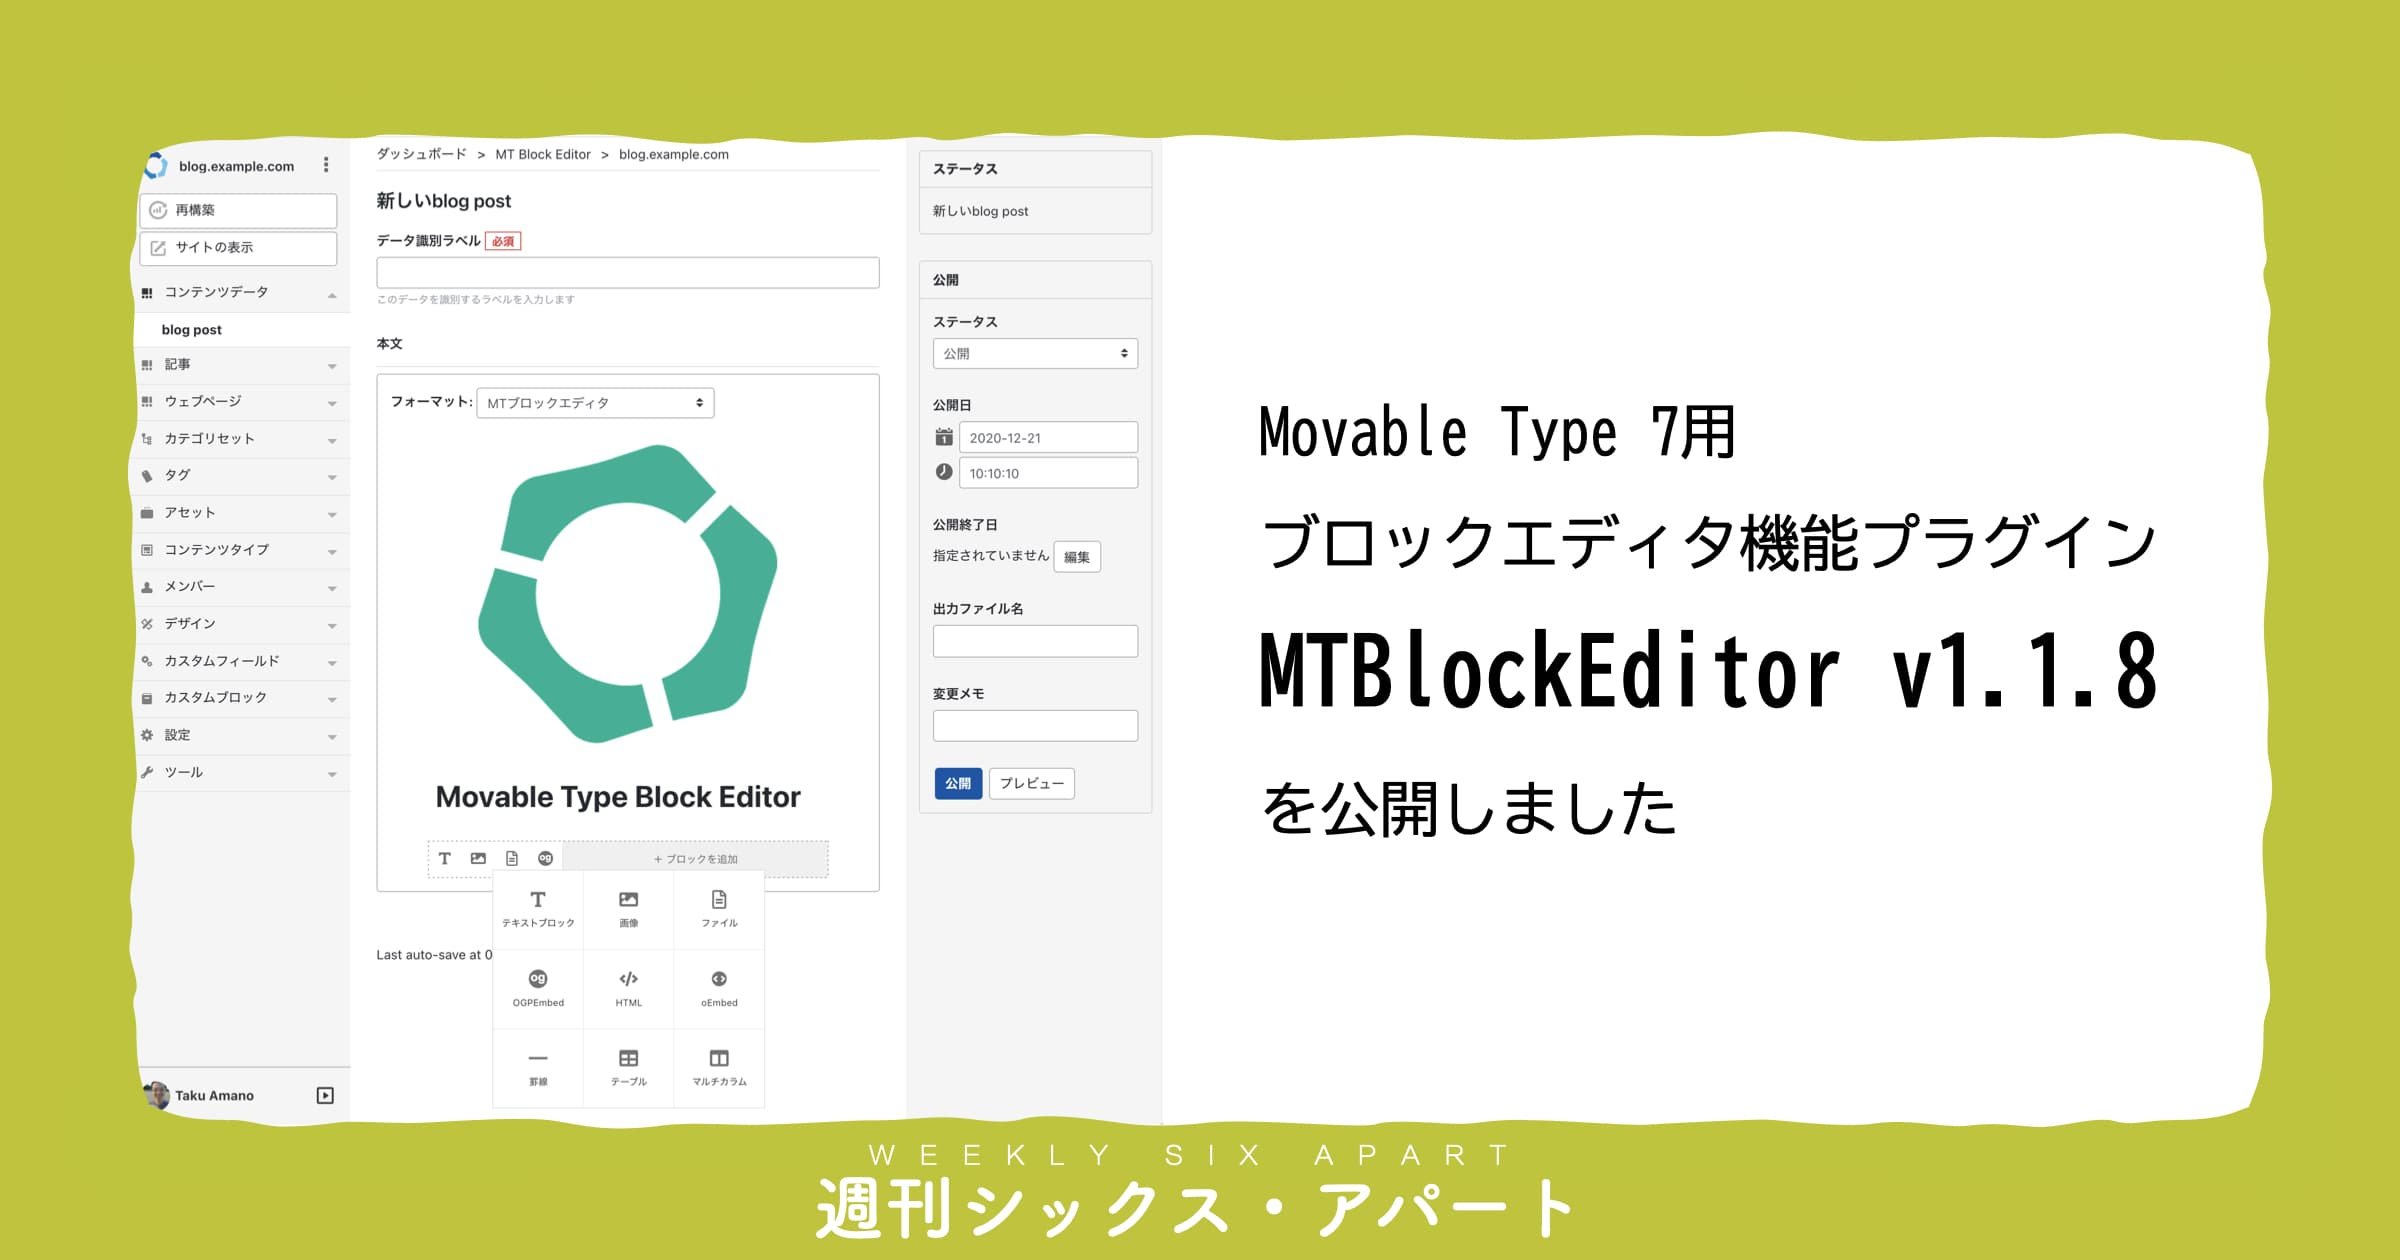 MT7用ブロックエディタプラグイン「MTBlockEditor」 v1.1.8 を公開しました #週刊SA